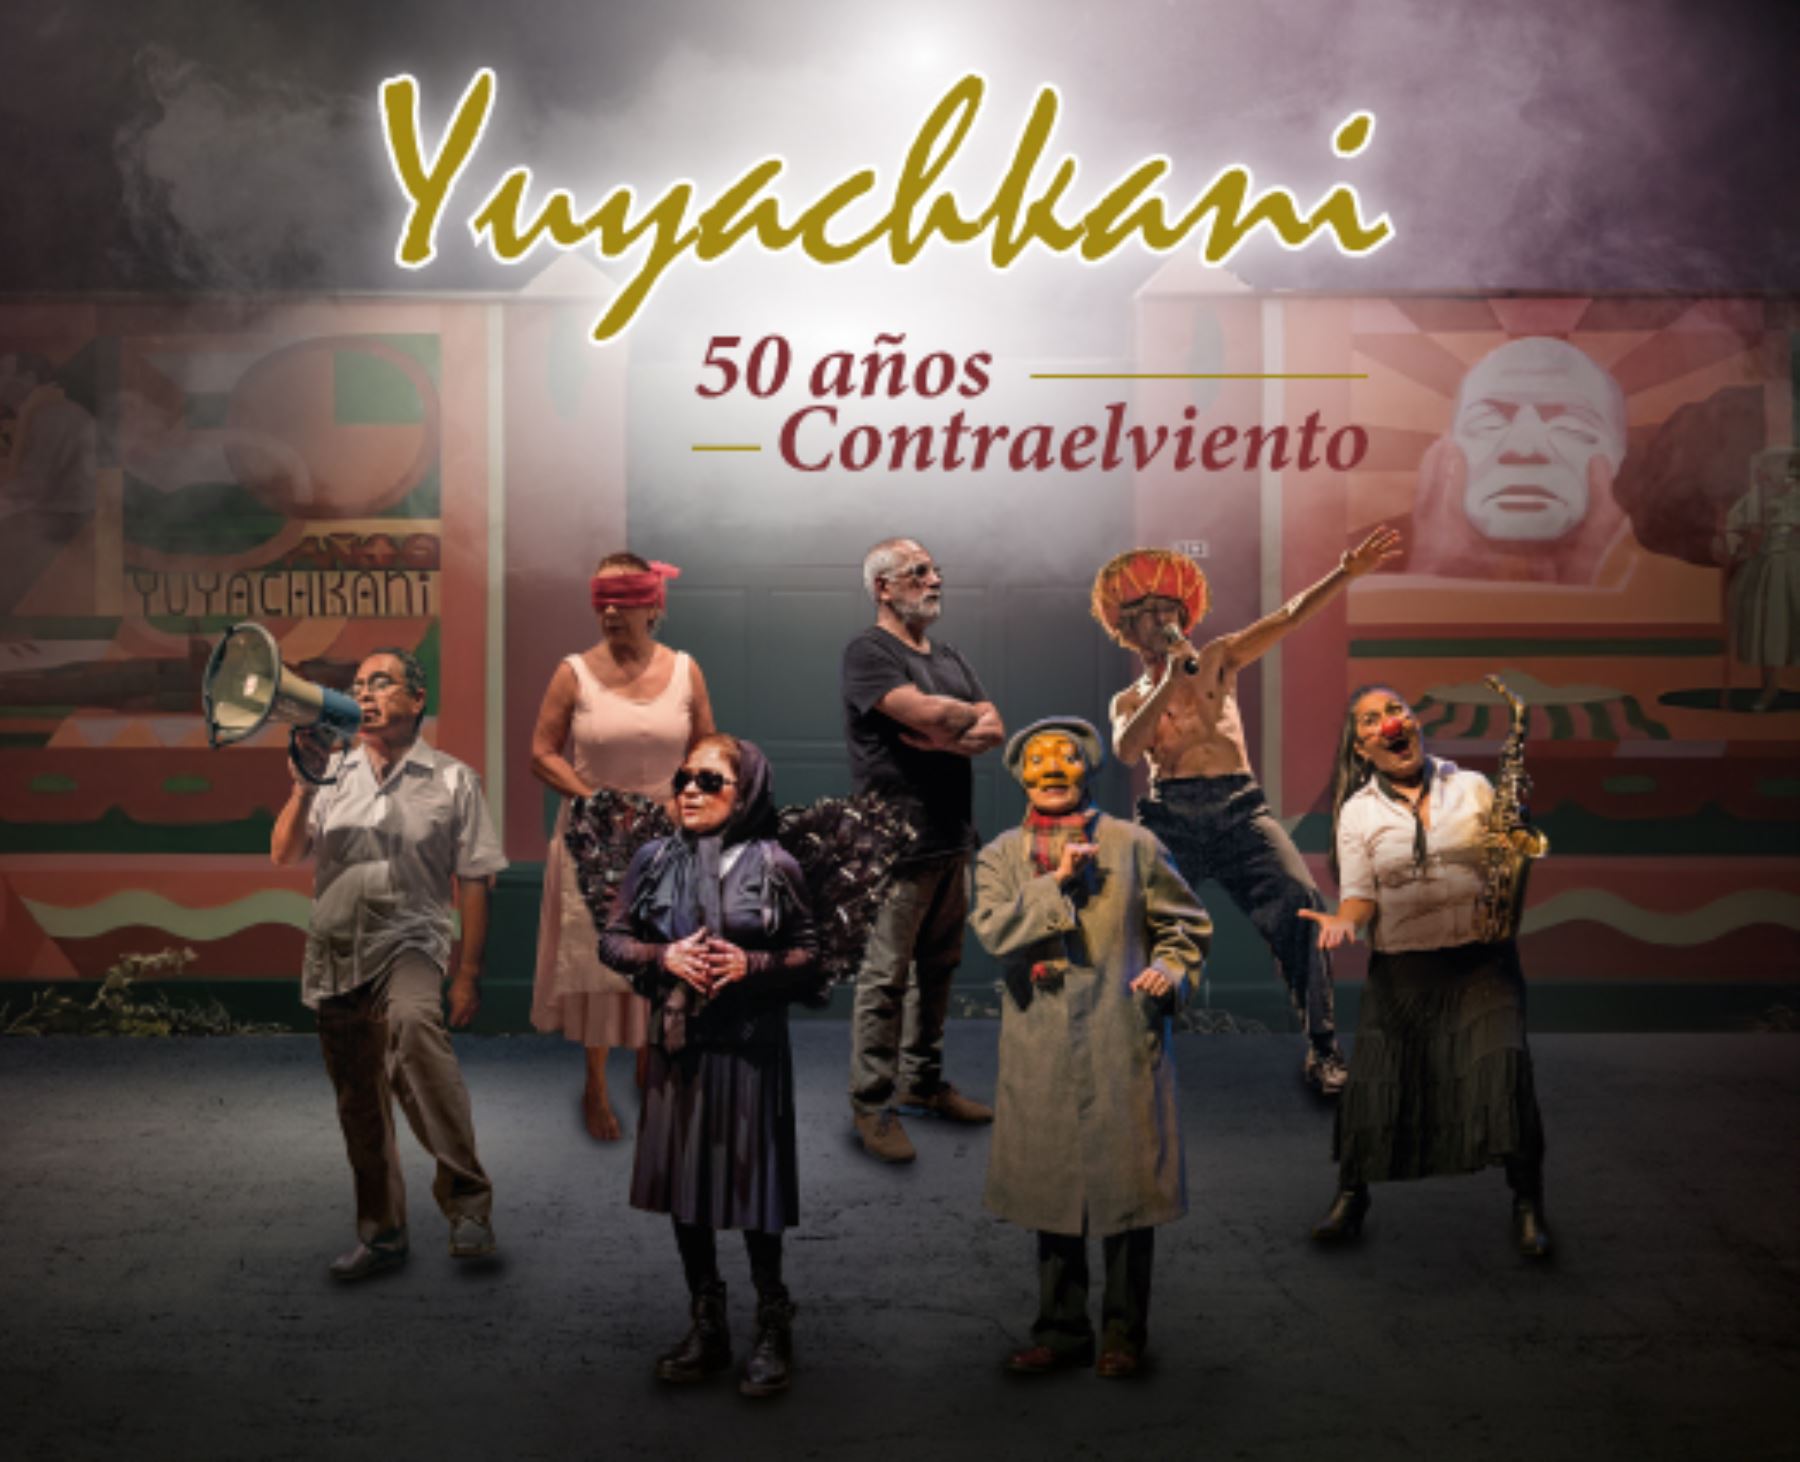 Presentan exposición Yuyachkani Contraelviento: 50 años en la historia del teatro peruano